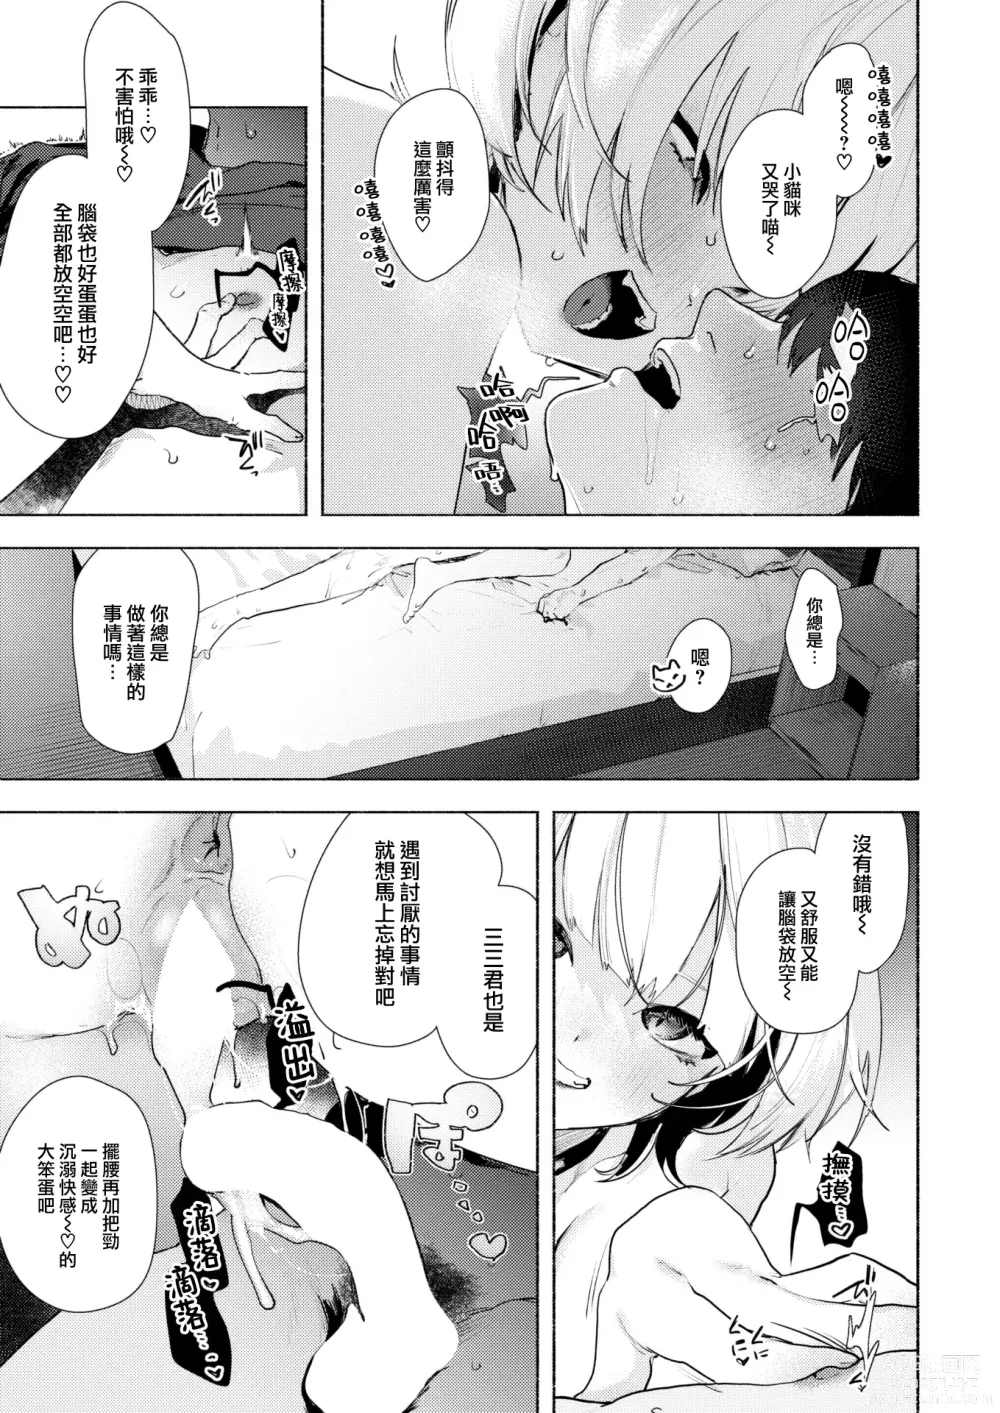 Page 15 of manga Noraneko